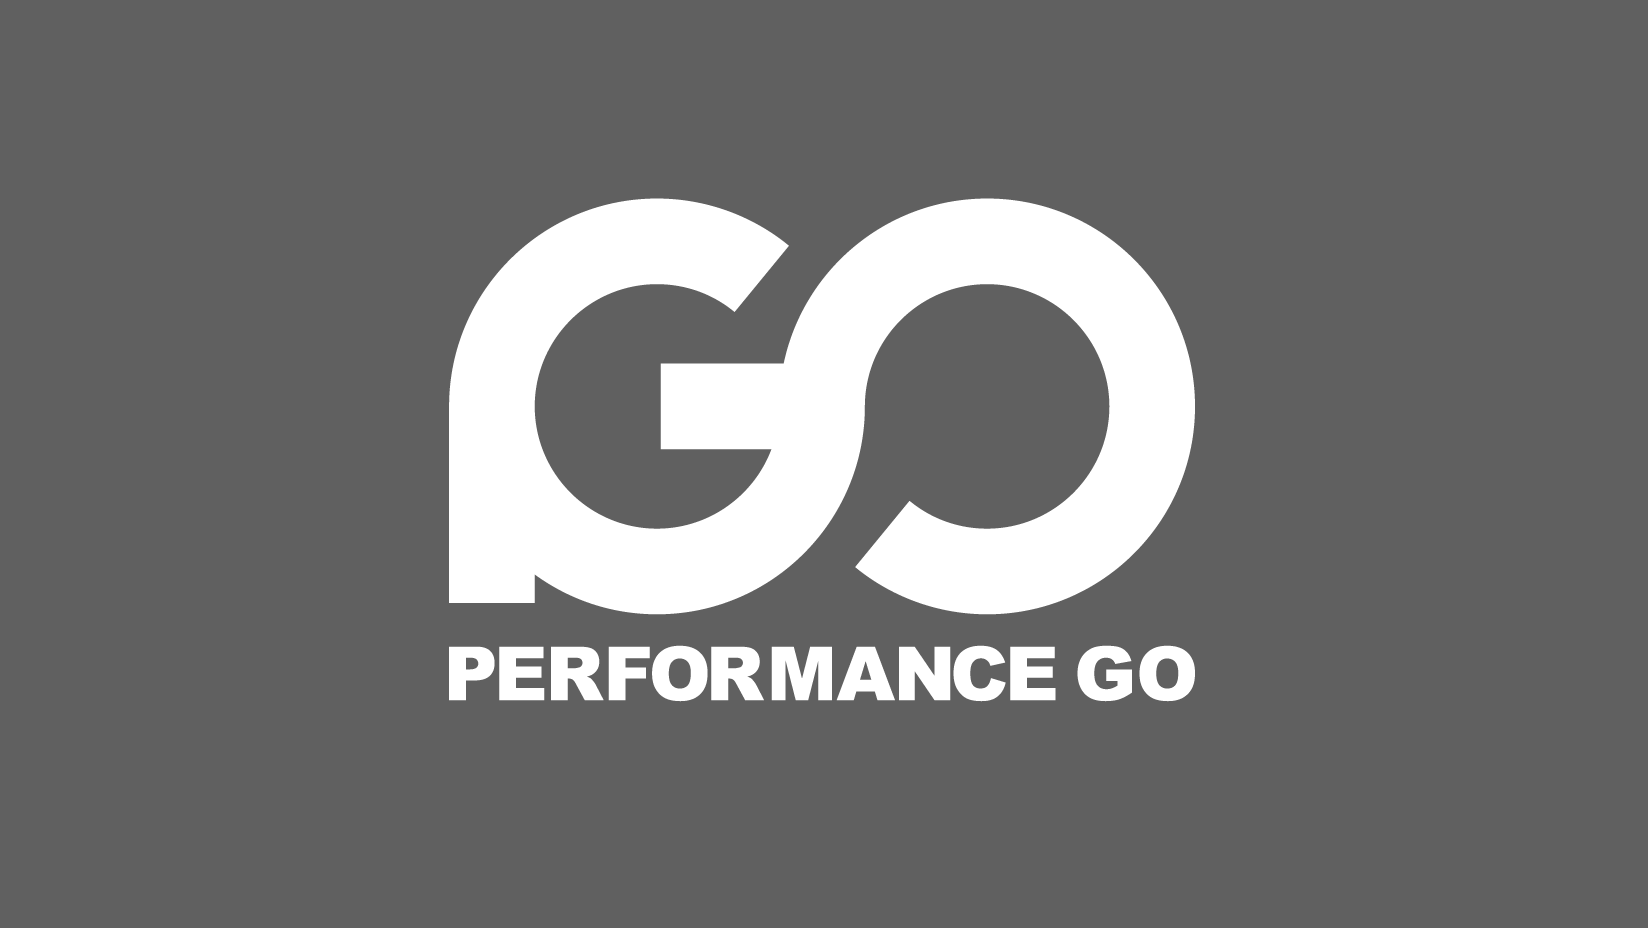 サイバーエージェント、 アフィリエイト広告運用の効果最大化を図るシステム 「Performance GO」の開発・提供を開始